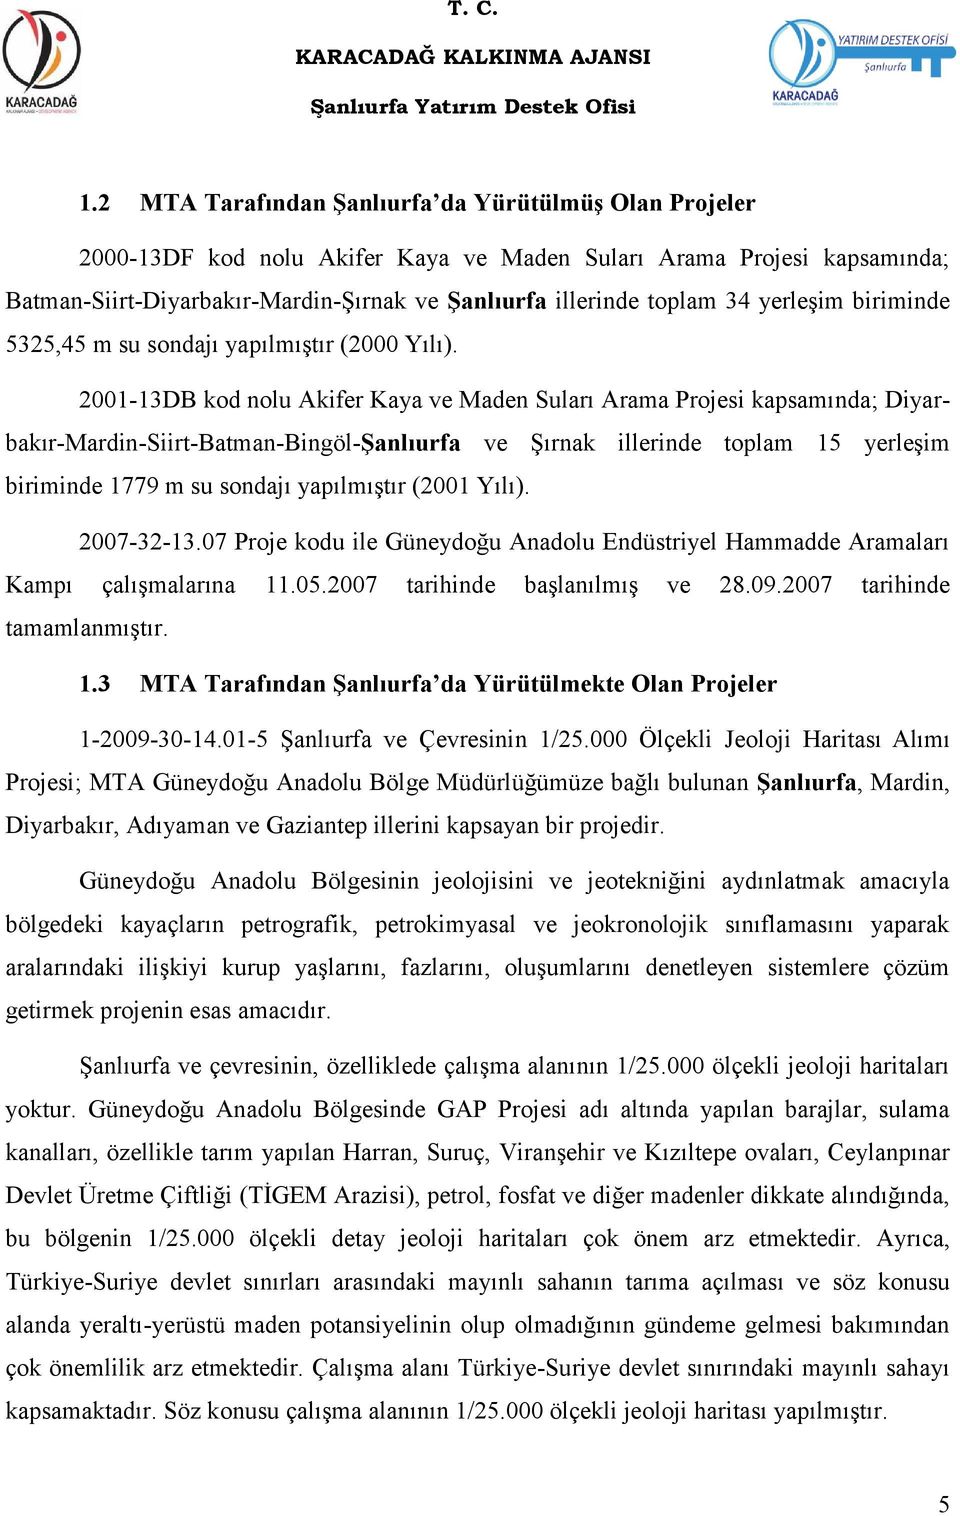 2001-13DB kod nolu Akifer Kaya ve Maden Suları Arama Projesi kapsamında; Diyarbakır-Mardin-Siirt-Batman-Bingöl-ġanlıurfa ve Şırnak illerinde toplam 15 yerleşim biriminde 1779 m su sondajı yapılmıştır